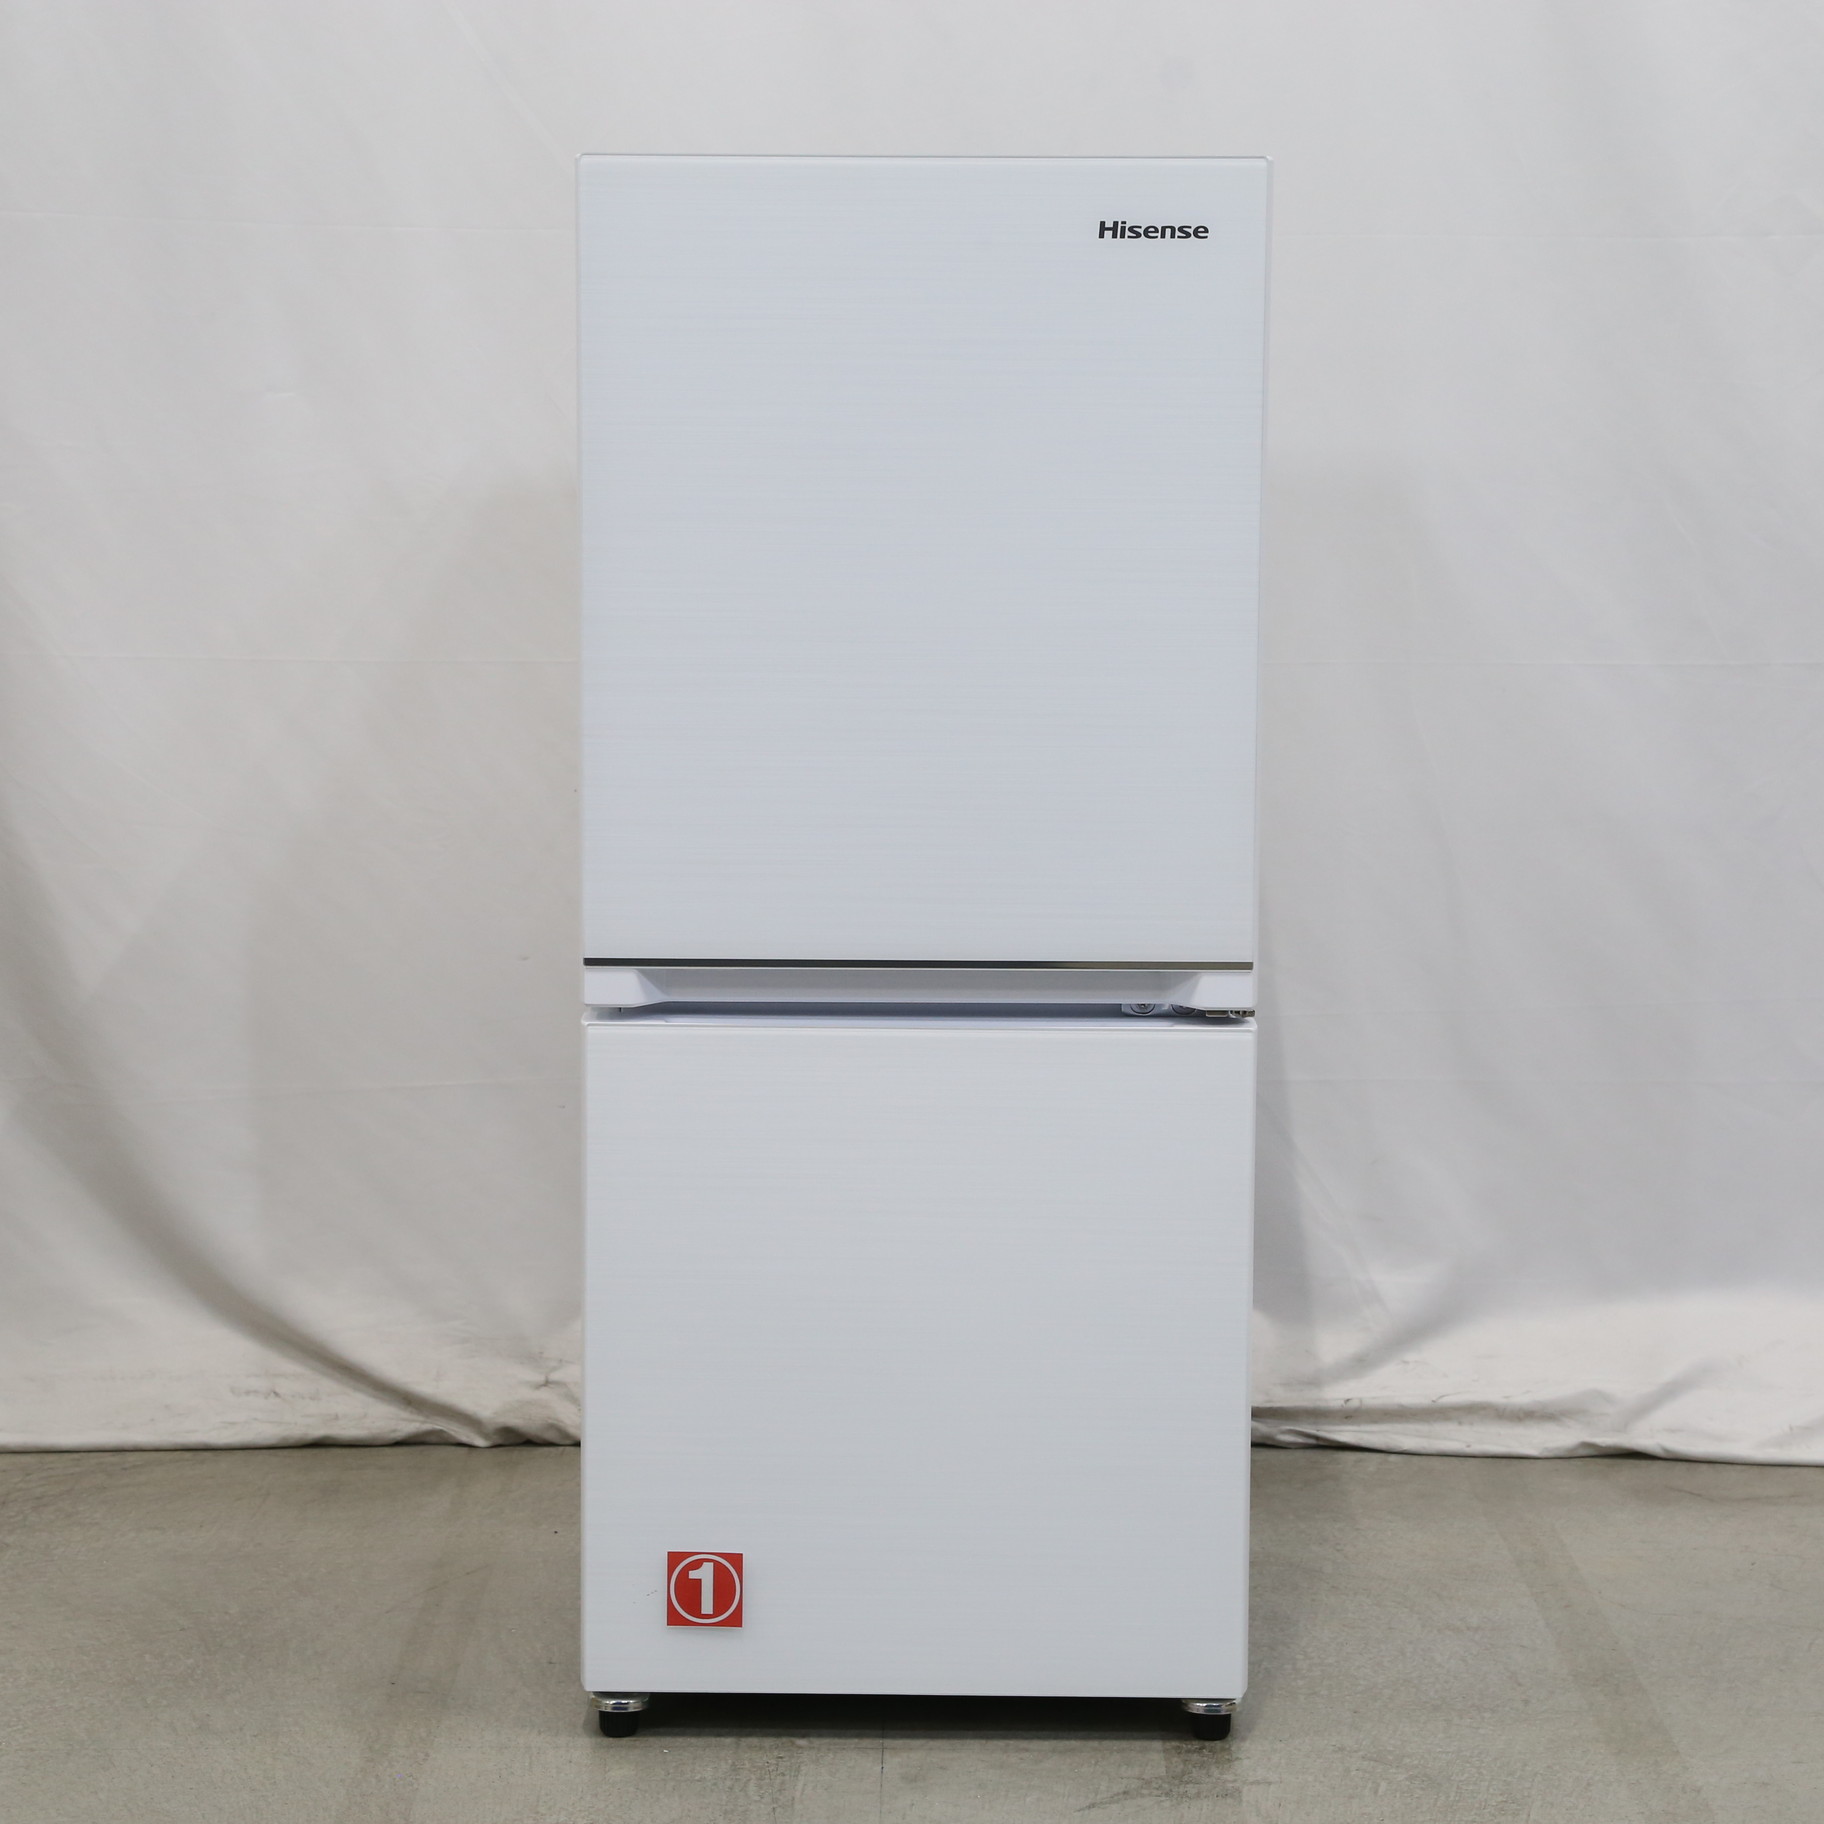 HR-G13B-W [2ドア /右開きタイプ /134L] [冷凍室 46L] - 冷蔵庫